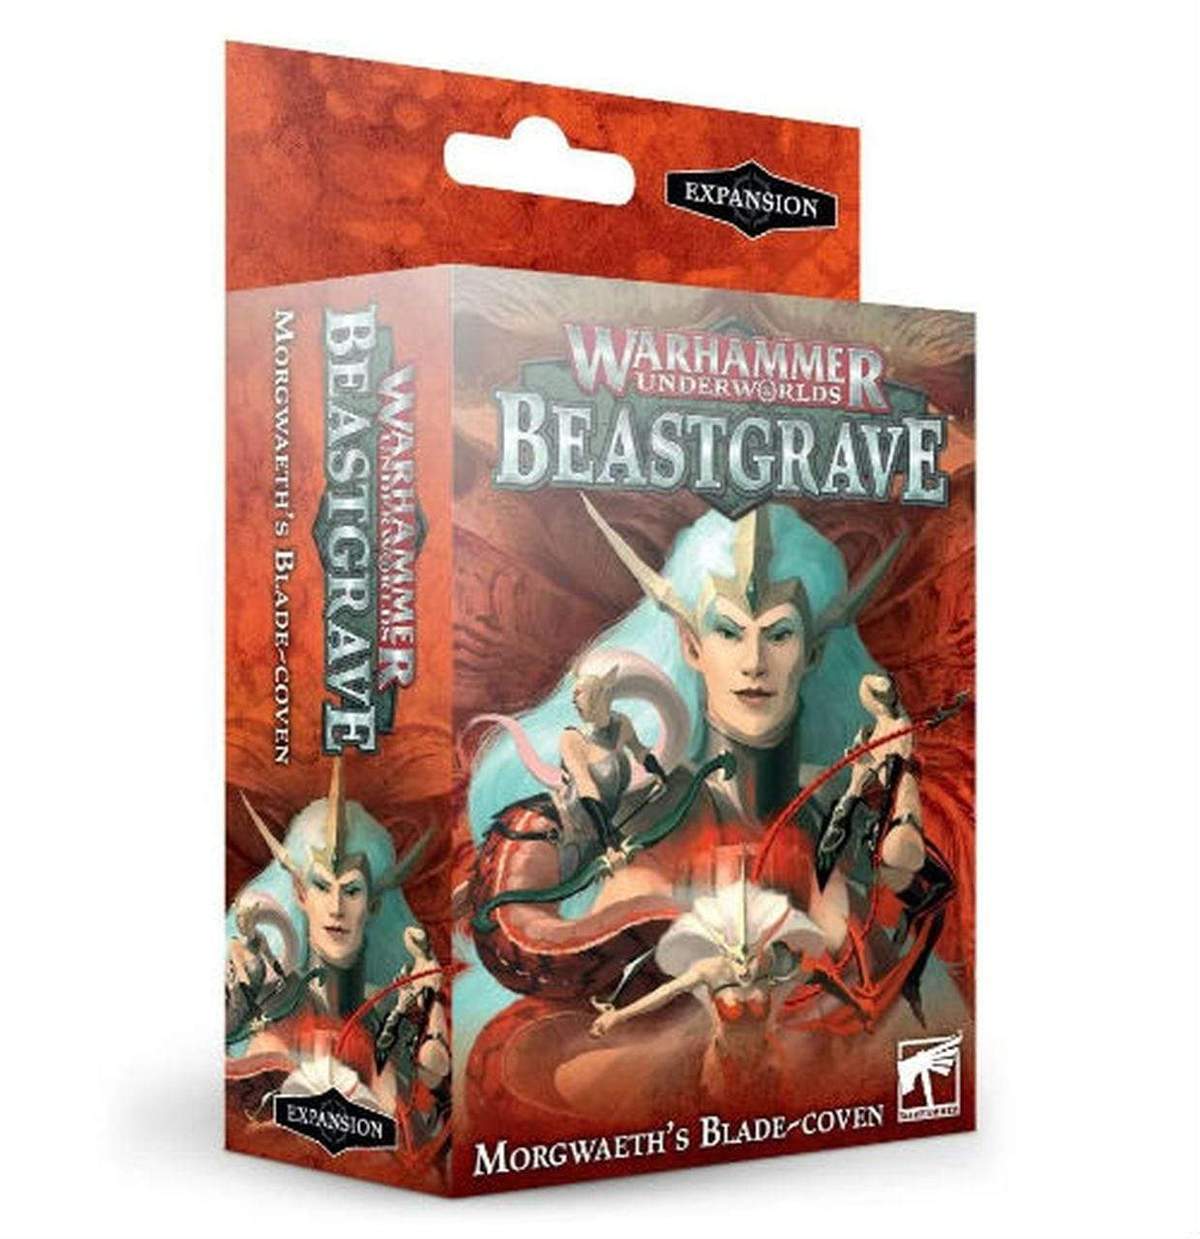 Warhammer Underworlds: Morgweath's Blade-Coven